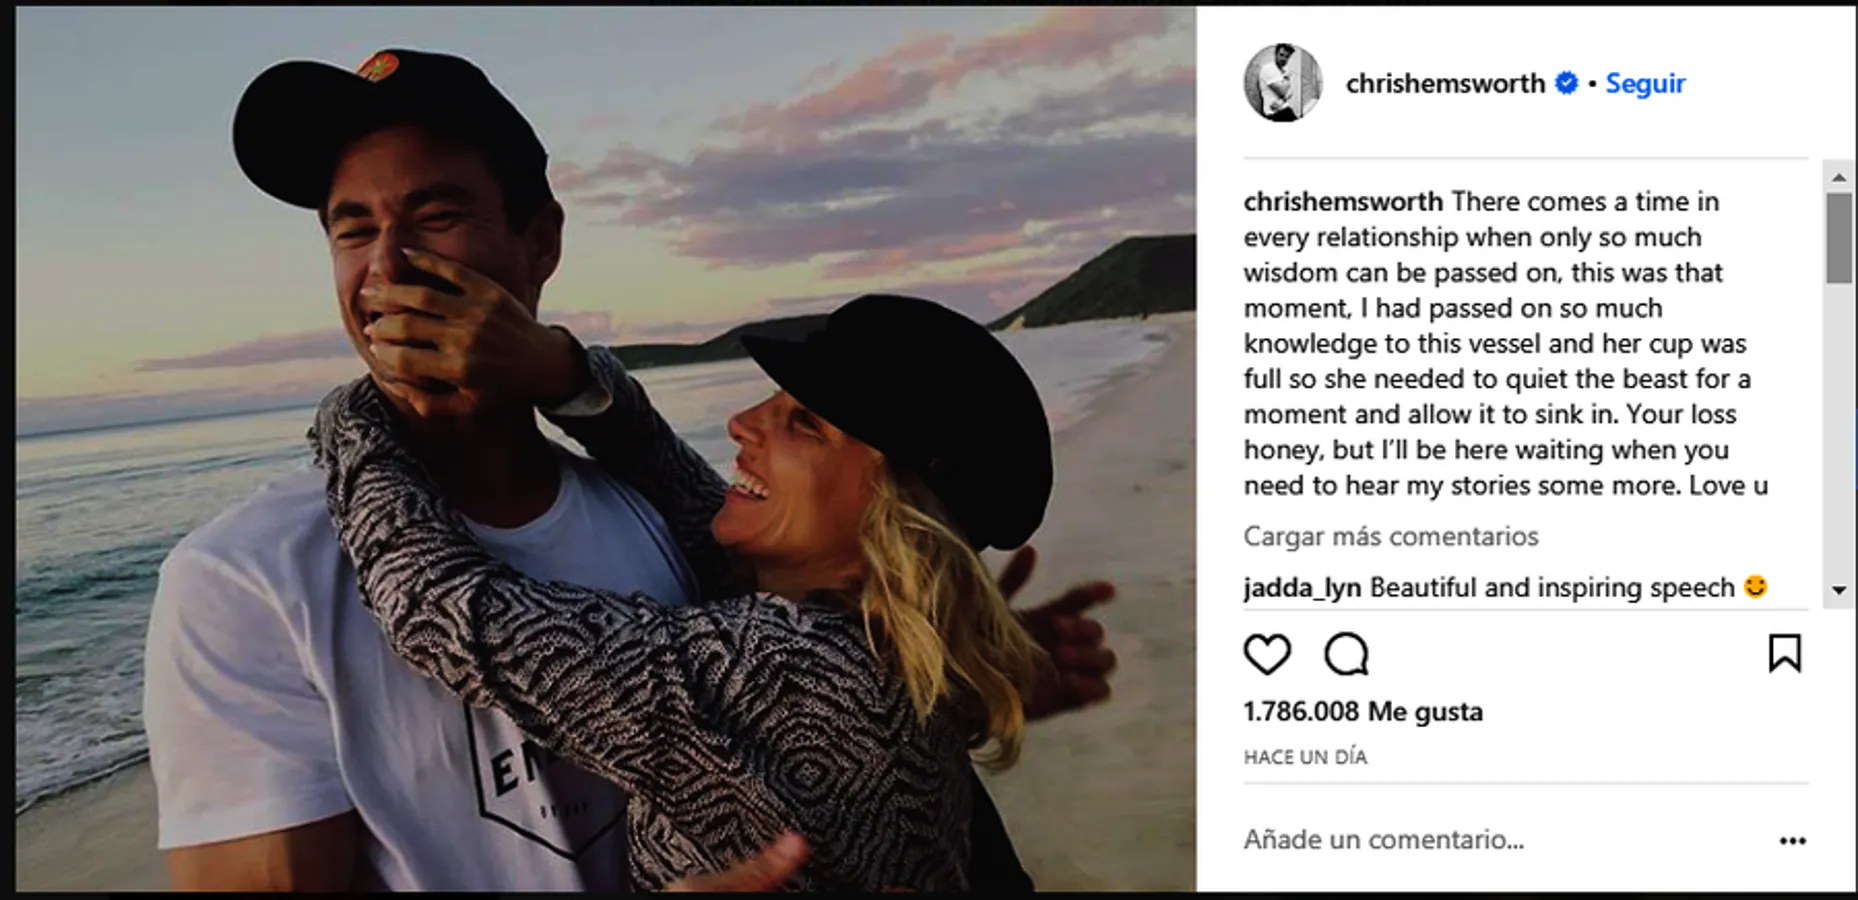 Chris Hemsworth, entrañables imágenes. El actor comparte una imagen con su esposa, Elsa Pataky . En ella podemos ver a la pareja disfrutando de unos días en la playa y compartiendo momentos de risas juntos.